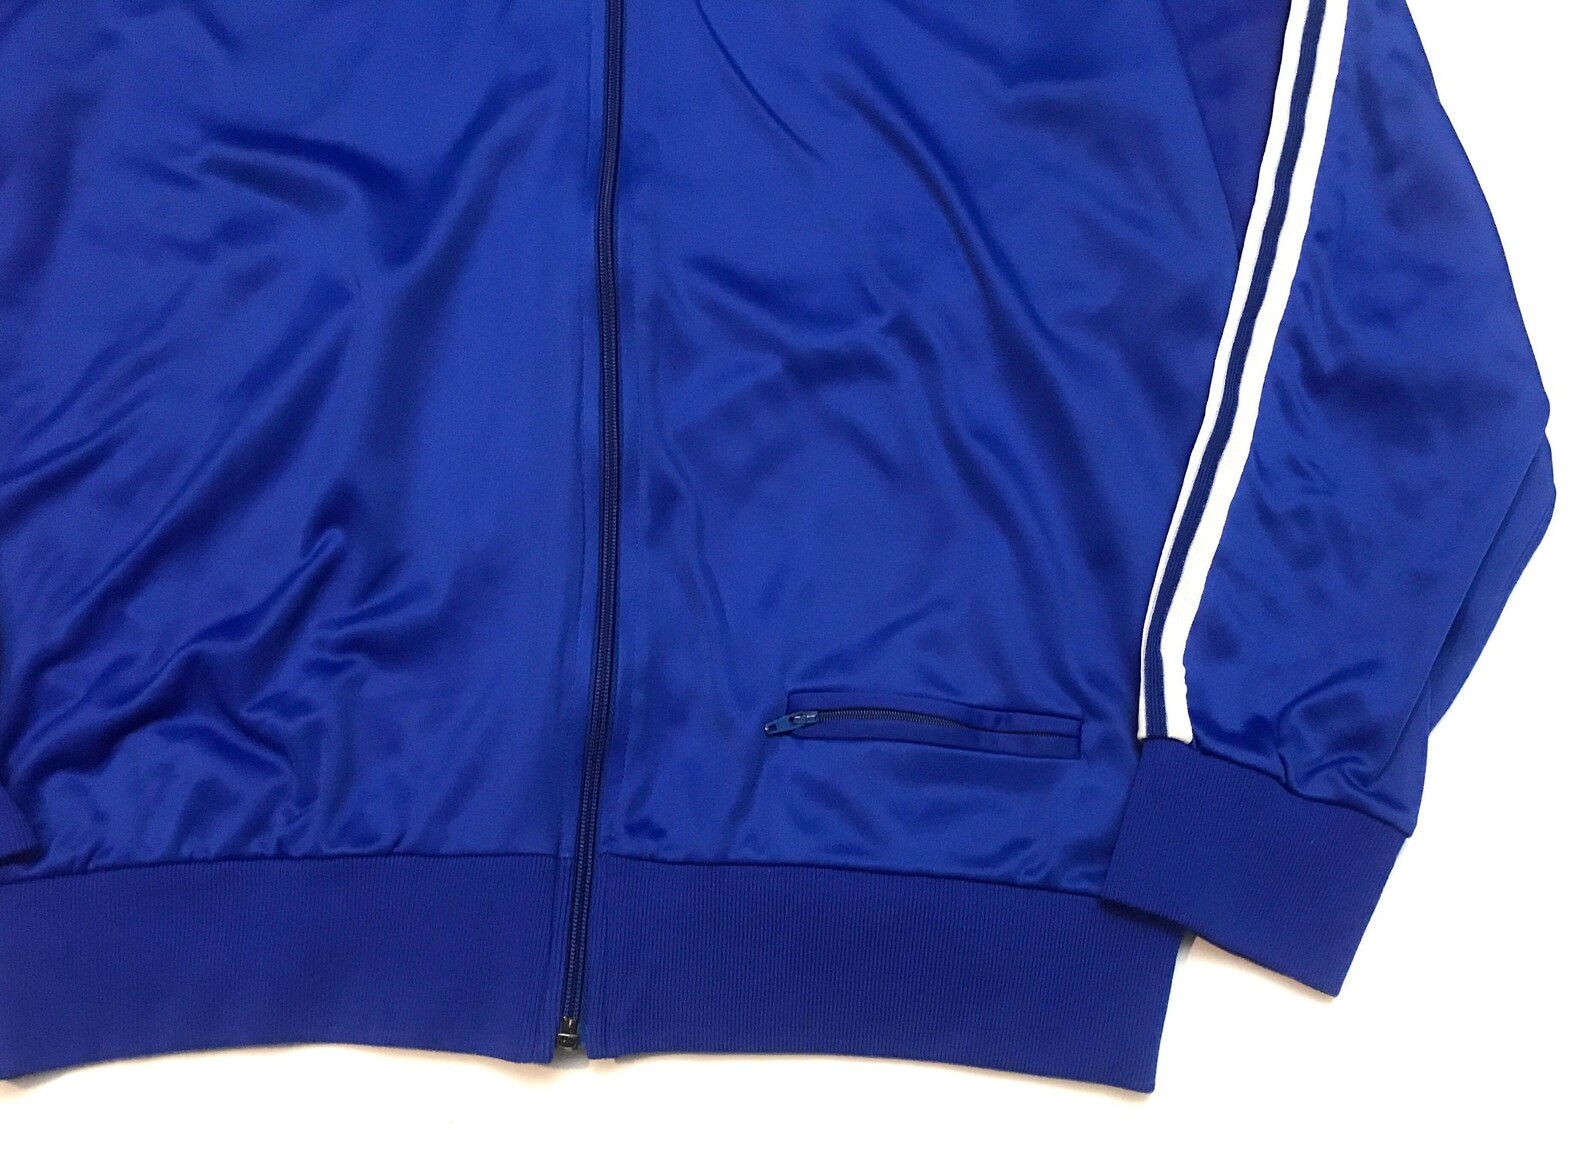 Adidas track jacket blue and white adidas tracksuit jacket | Etsy